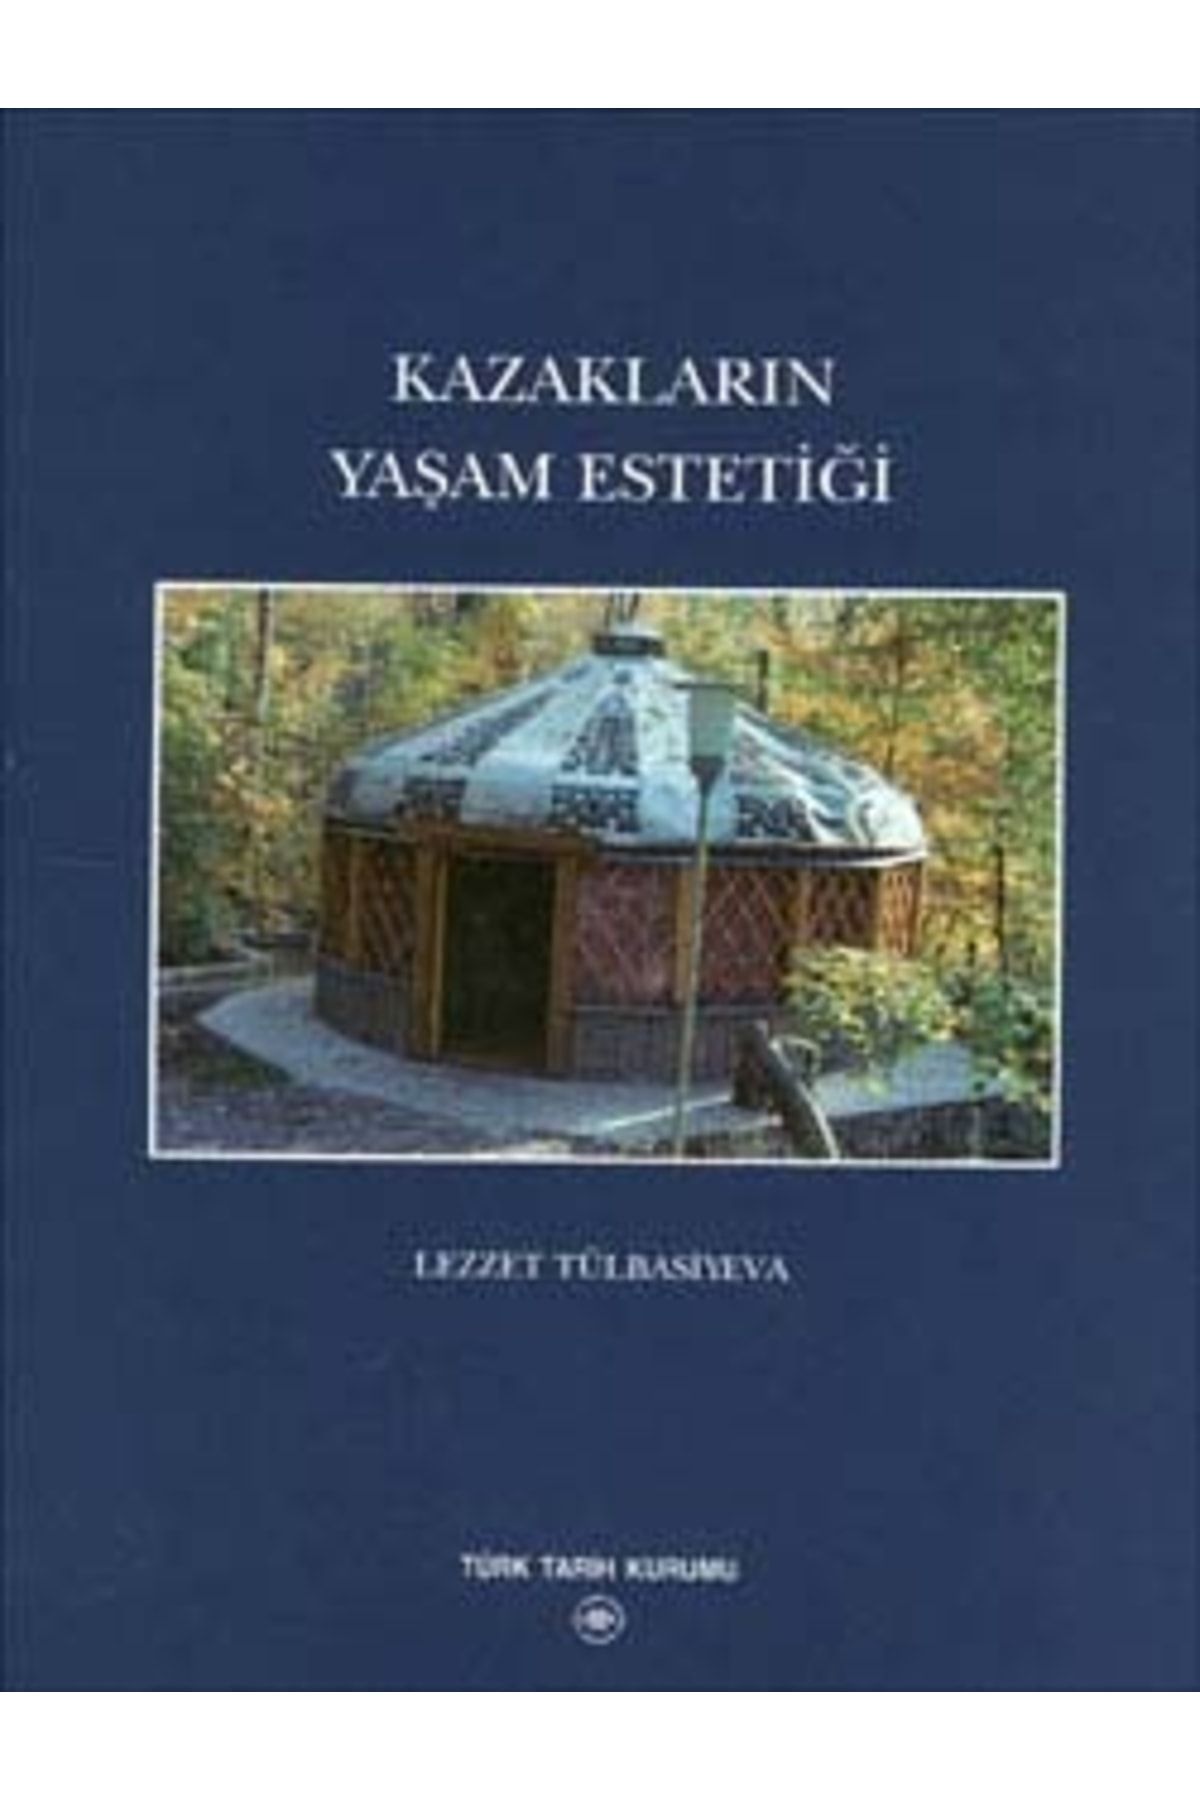 Türk Tarih Kurumu Yayınları Kazakların Yaşam Estetiği, 2004